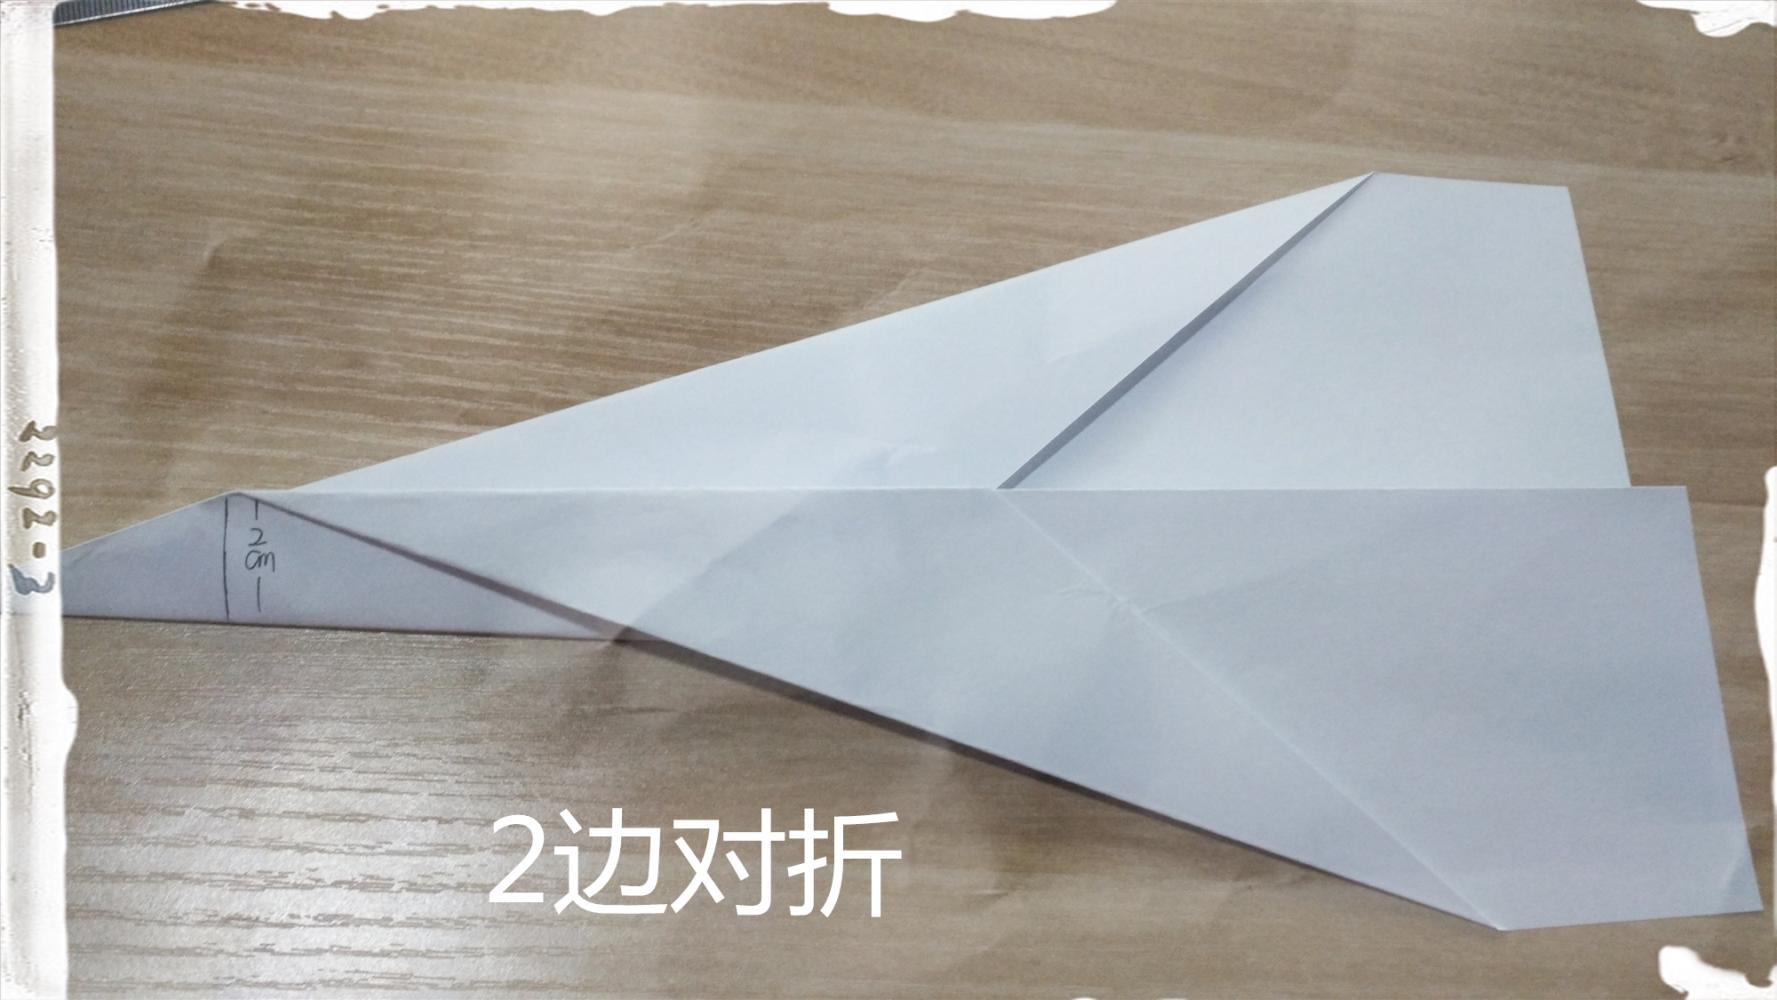 纸飞机下载教程_电脑纸飞机下载教程